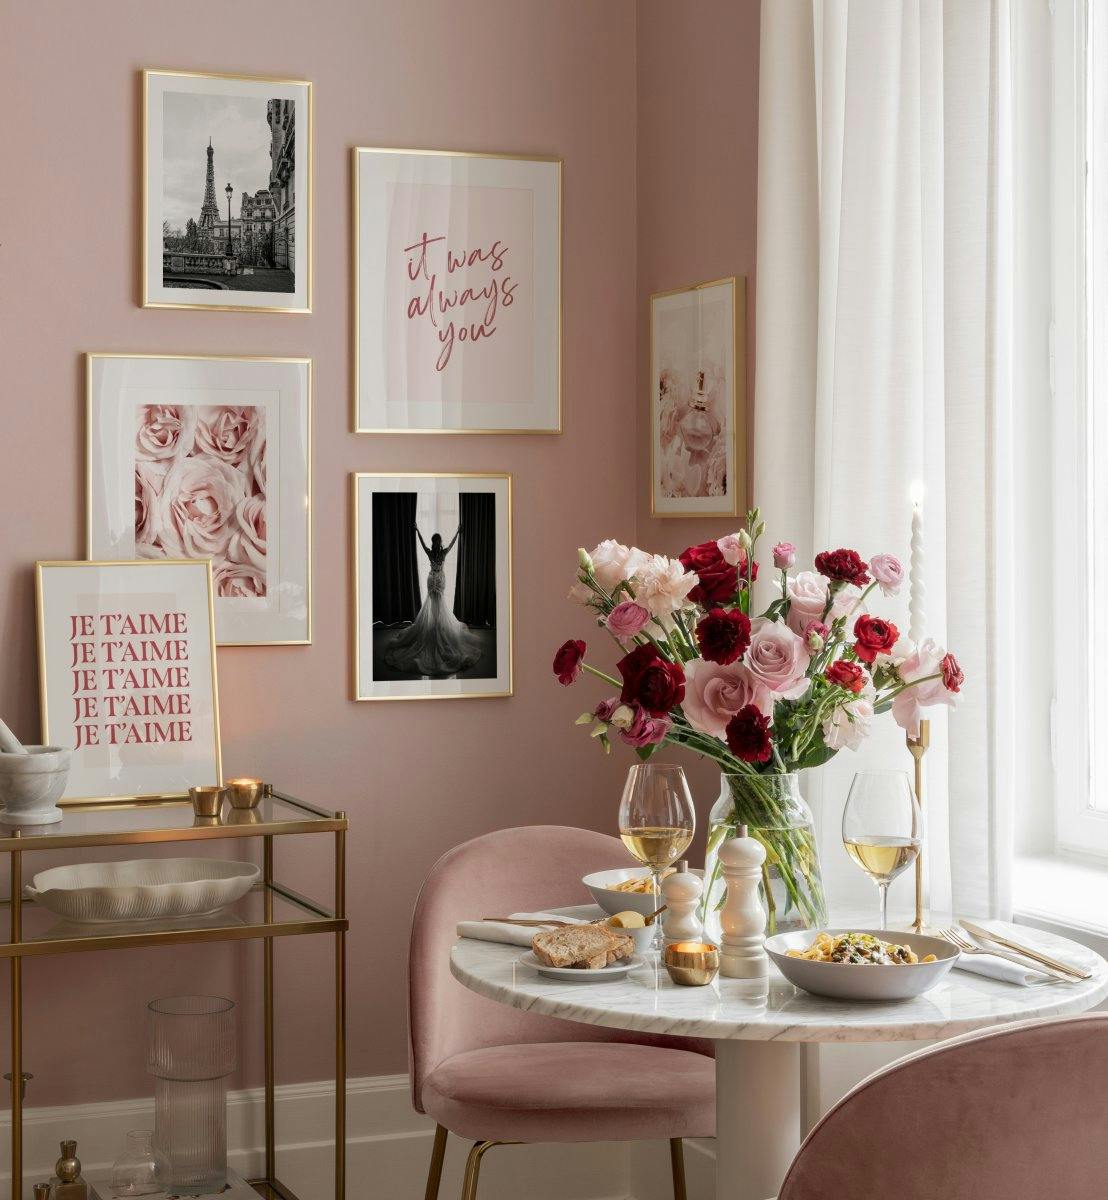 ピンクとモノクロの写真と引用文リビングルームやベッドルームに